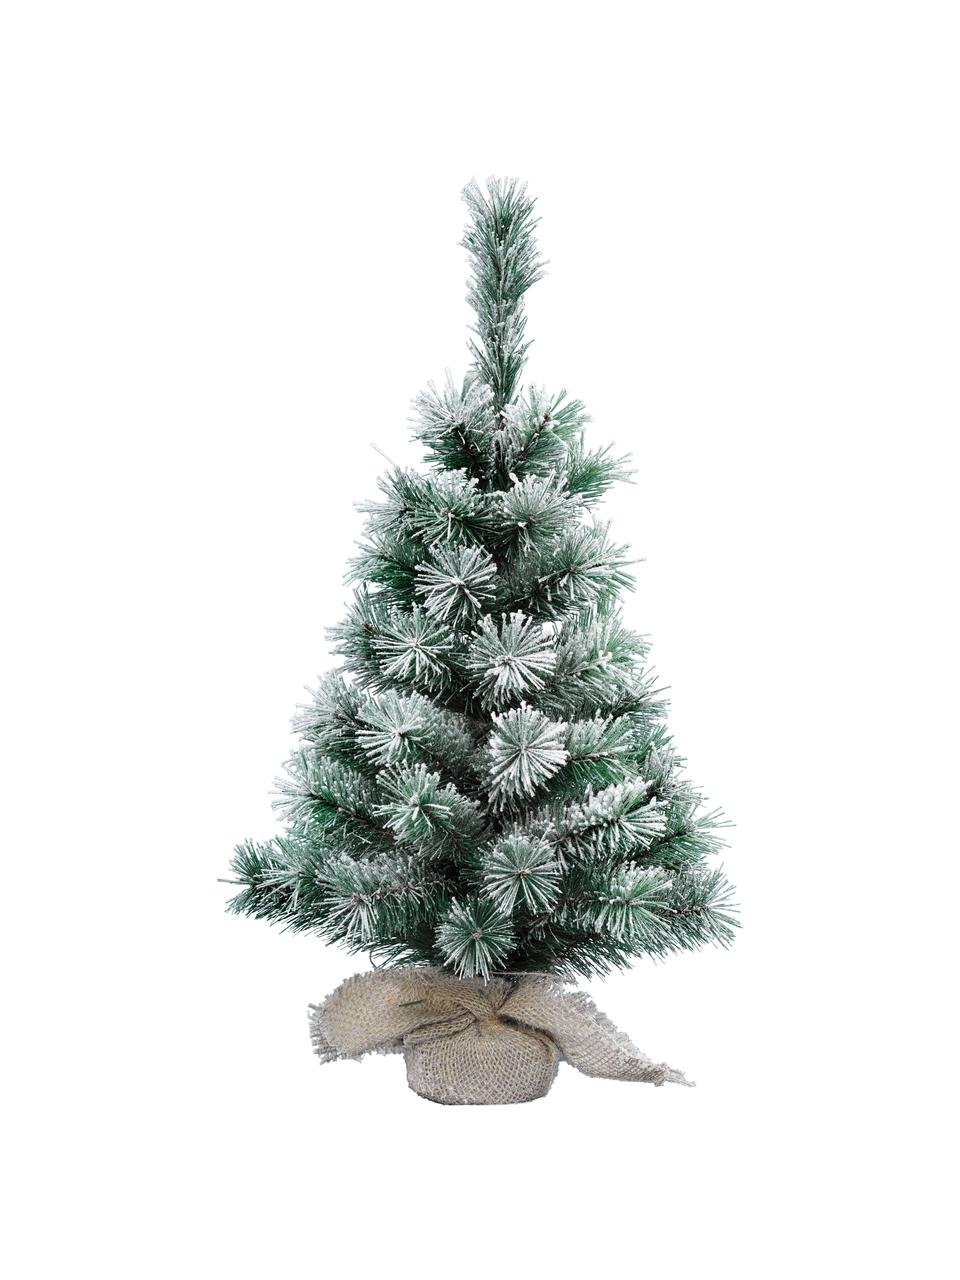 Künstlicher Weihnachtsbaum Vancouver, beschneit, Grün, Weiß, Ø 26 x H 45 cm